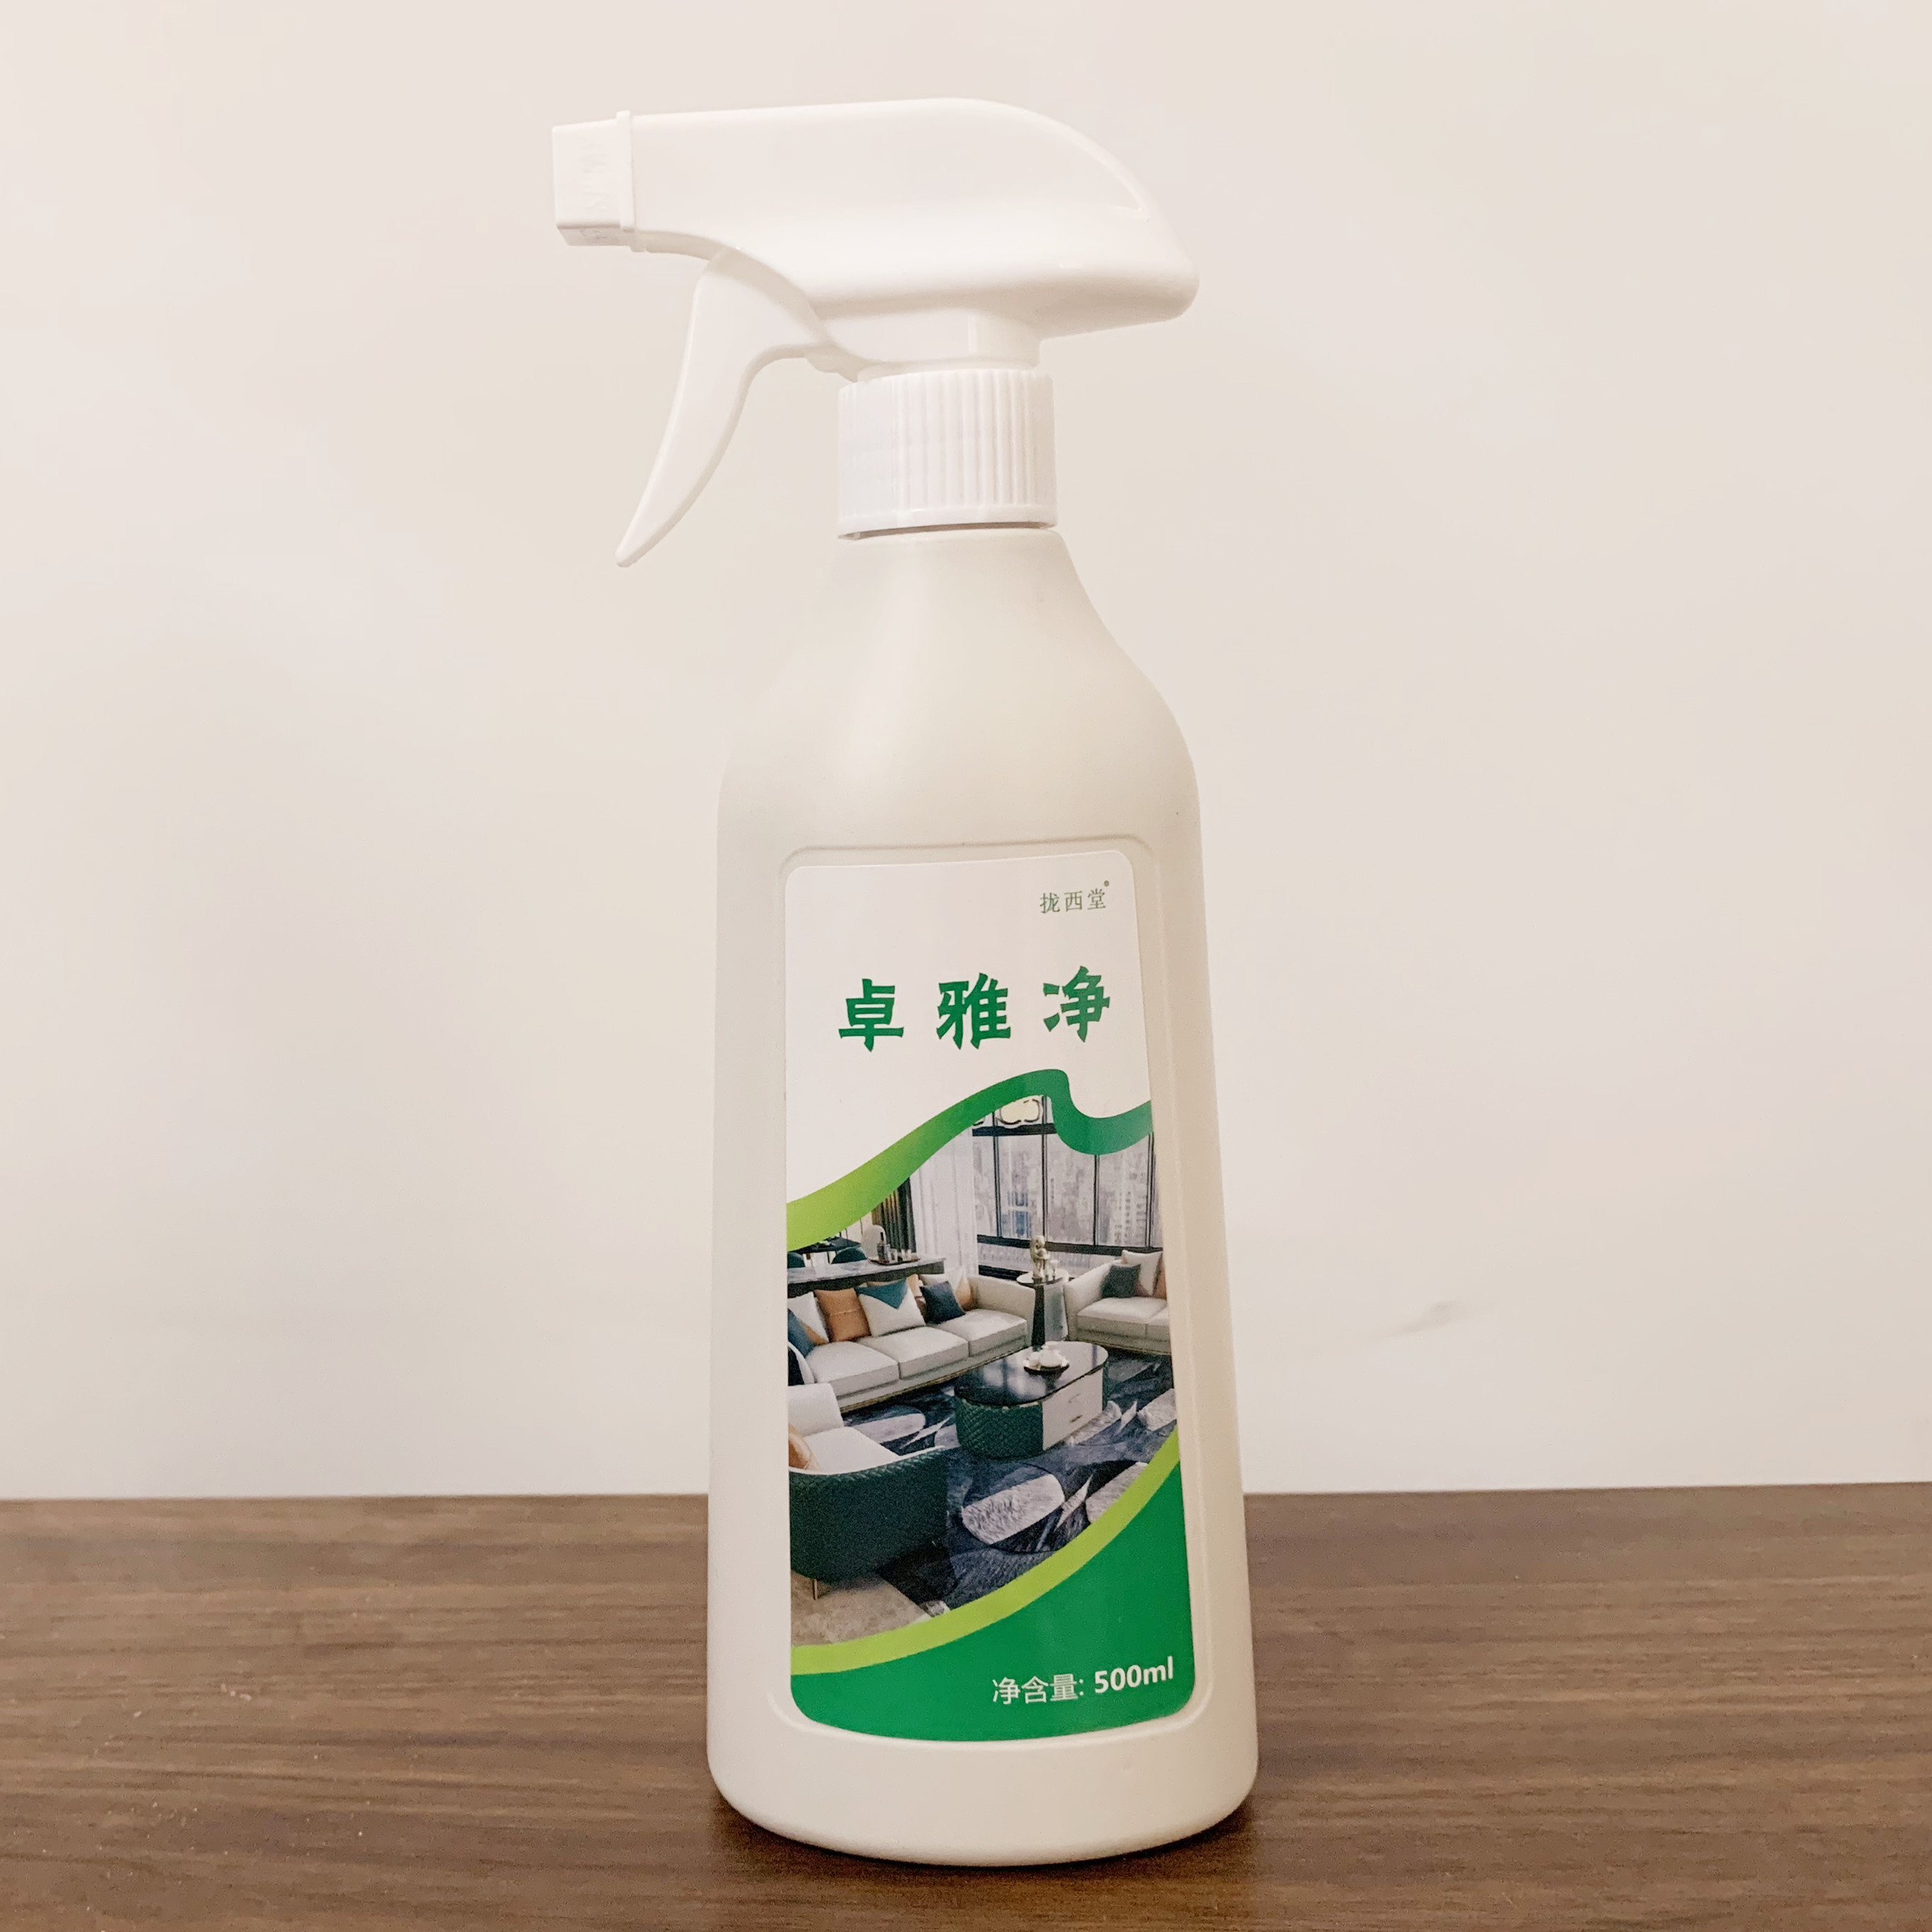 卓雅净清洁剂陇西堂好帮手厨房地板洗护液体清洗剂多功能油污剂